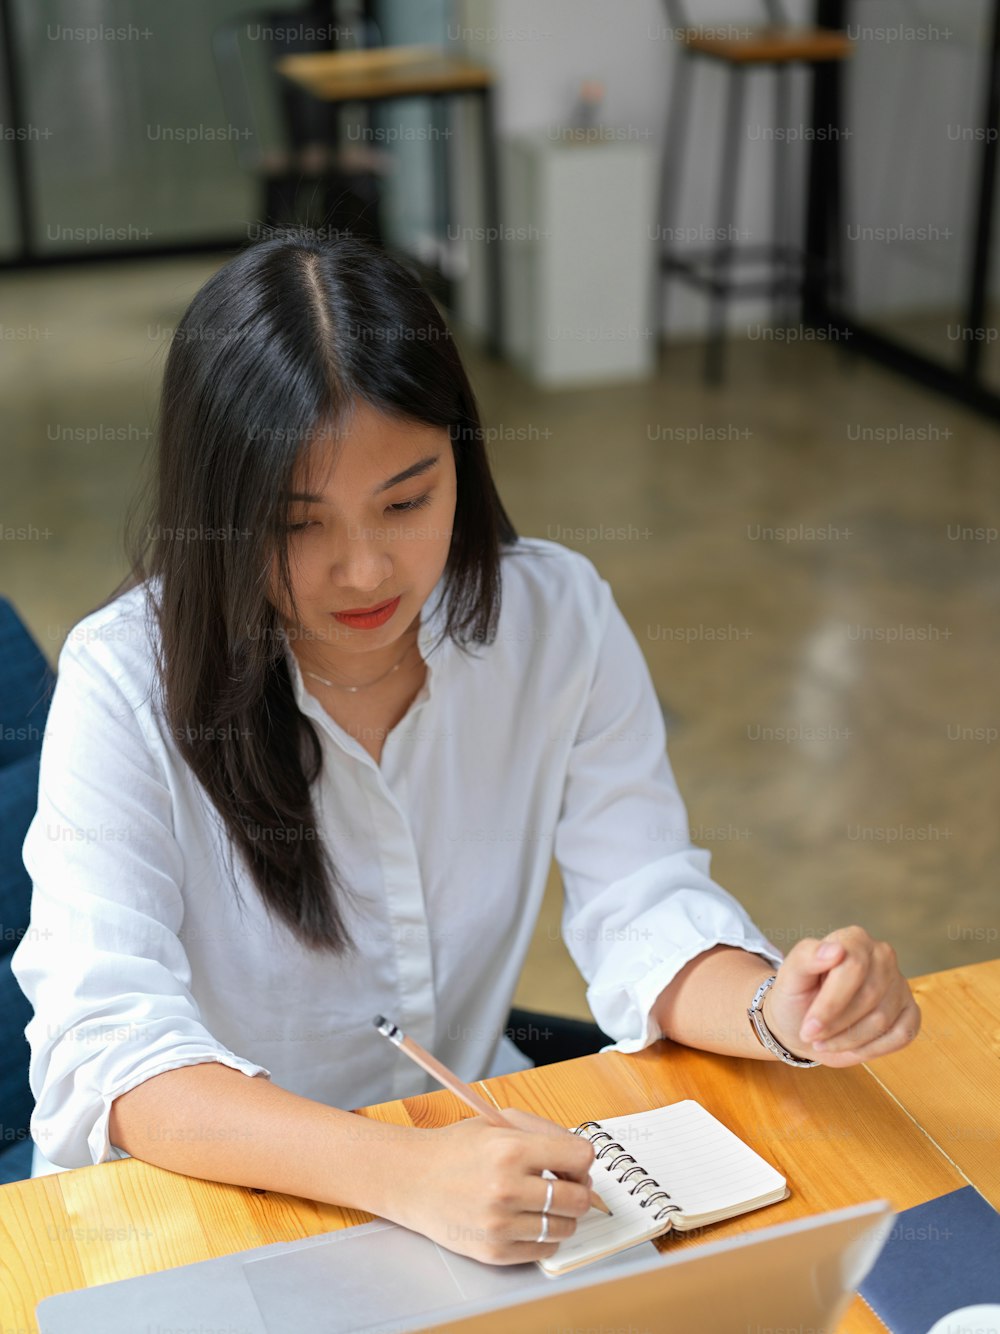 Colpo ritagliato di una lavoratrice che scrive su un taccuino bianco mentre lavora con il computer portatile sul tavolo di legno